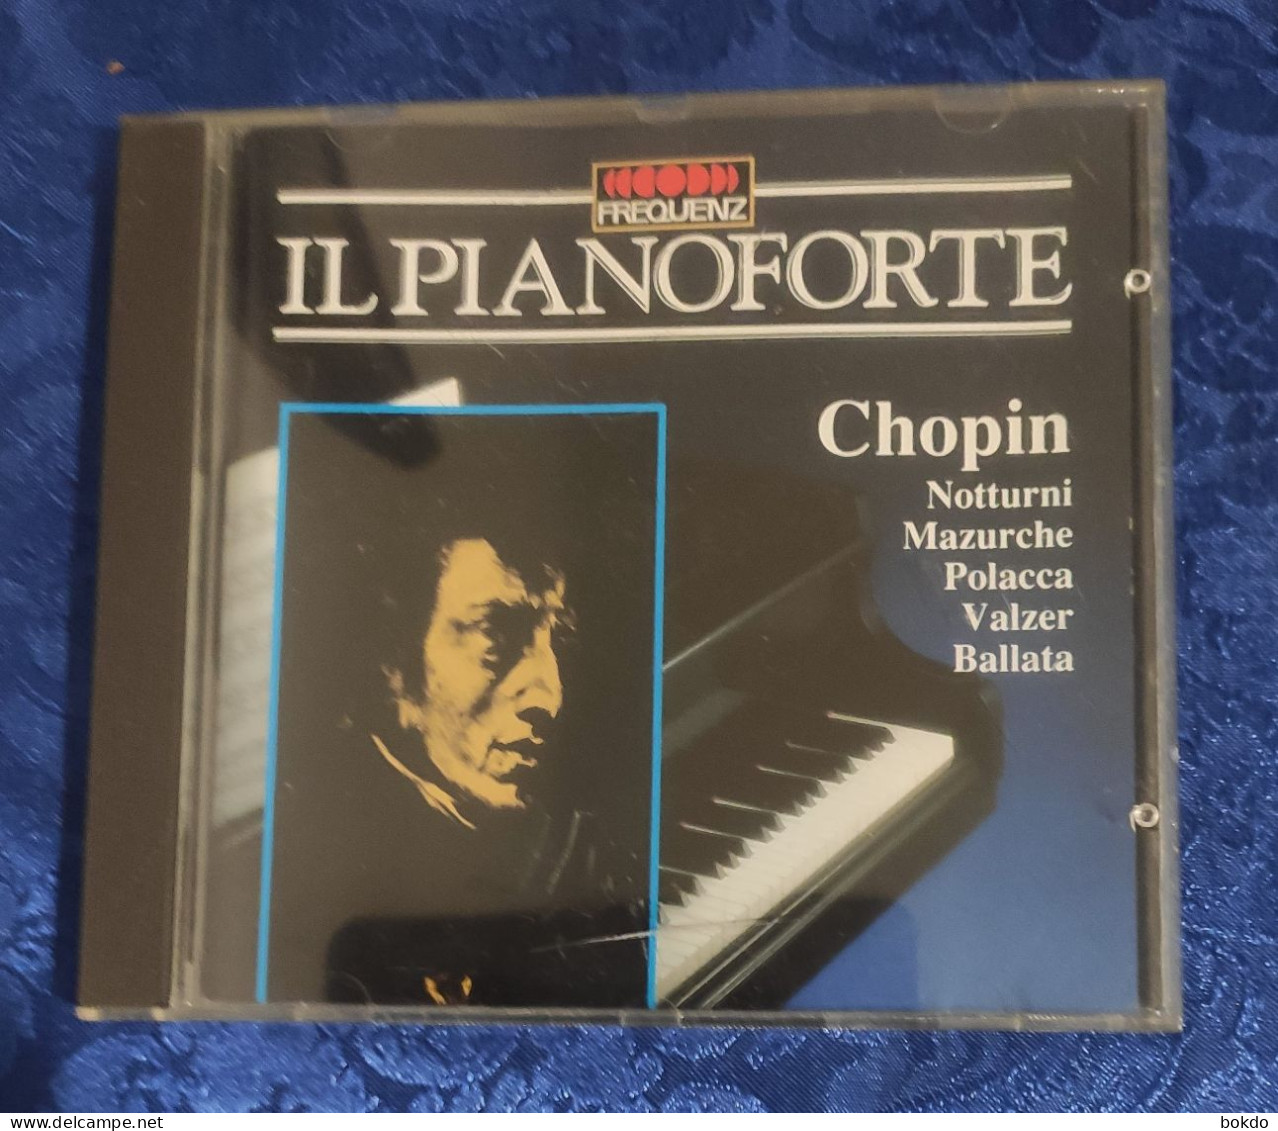 Chopin - Il Pianoforte - Notturni - Mazurche - Polacca - Valzer - Ballata - Classical